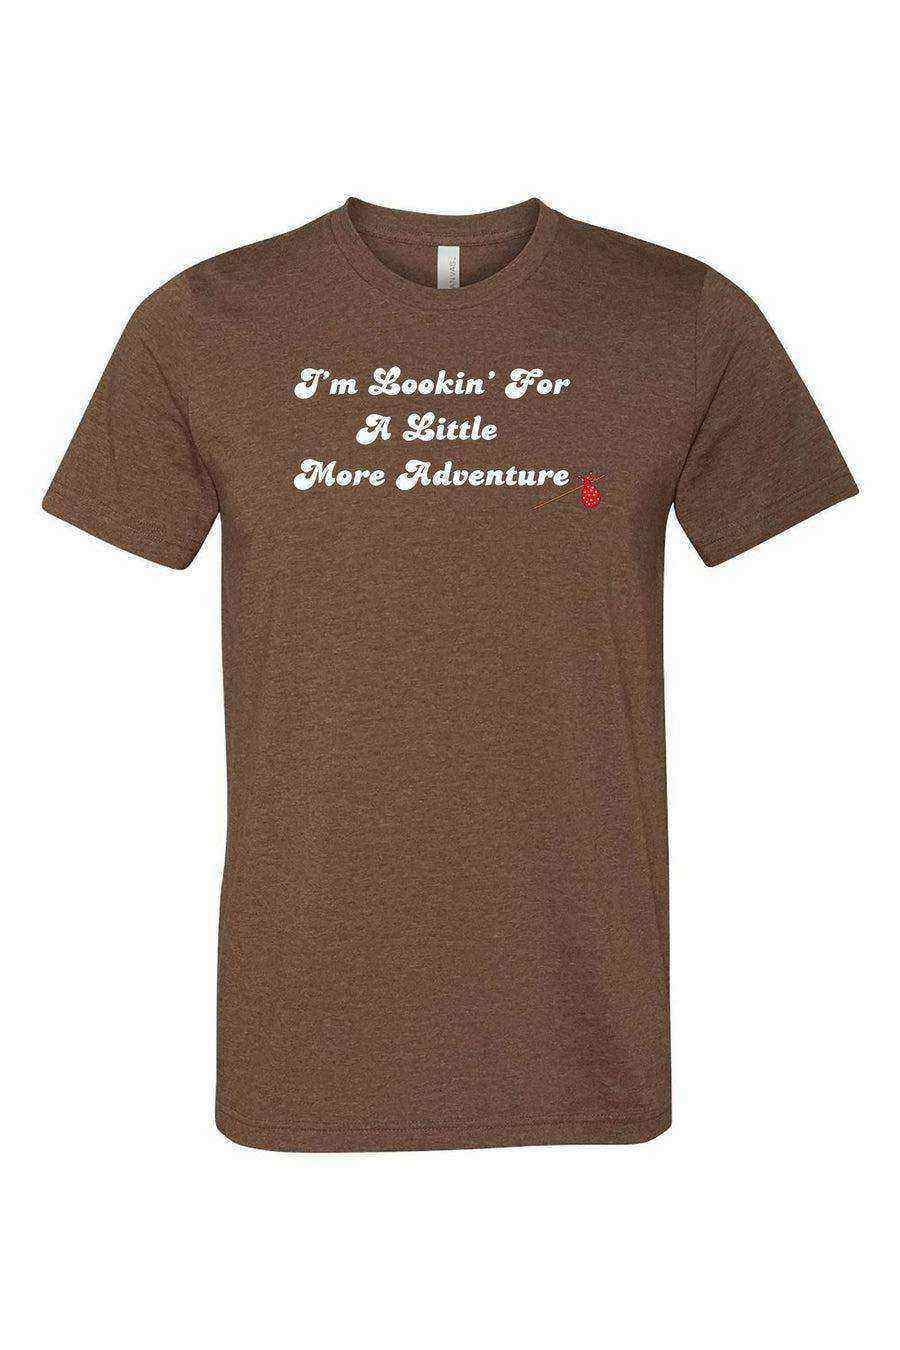 Splash Mountain Shirt | Brer Rabbit Shirt | Im Lookin For A Little More Adventure Shirt - Dylan's Tees